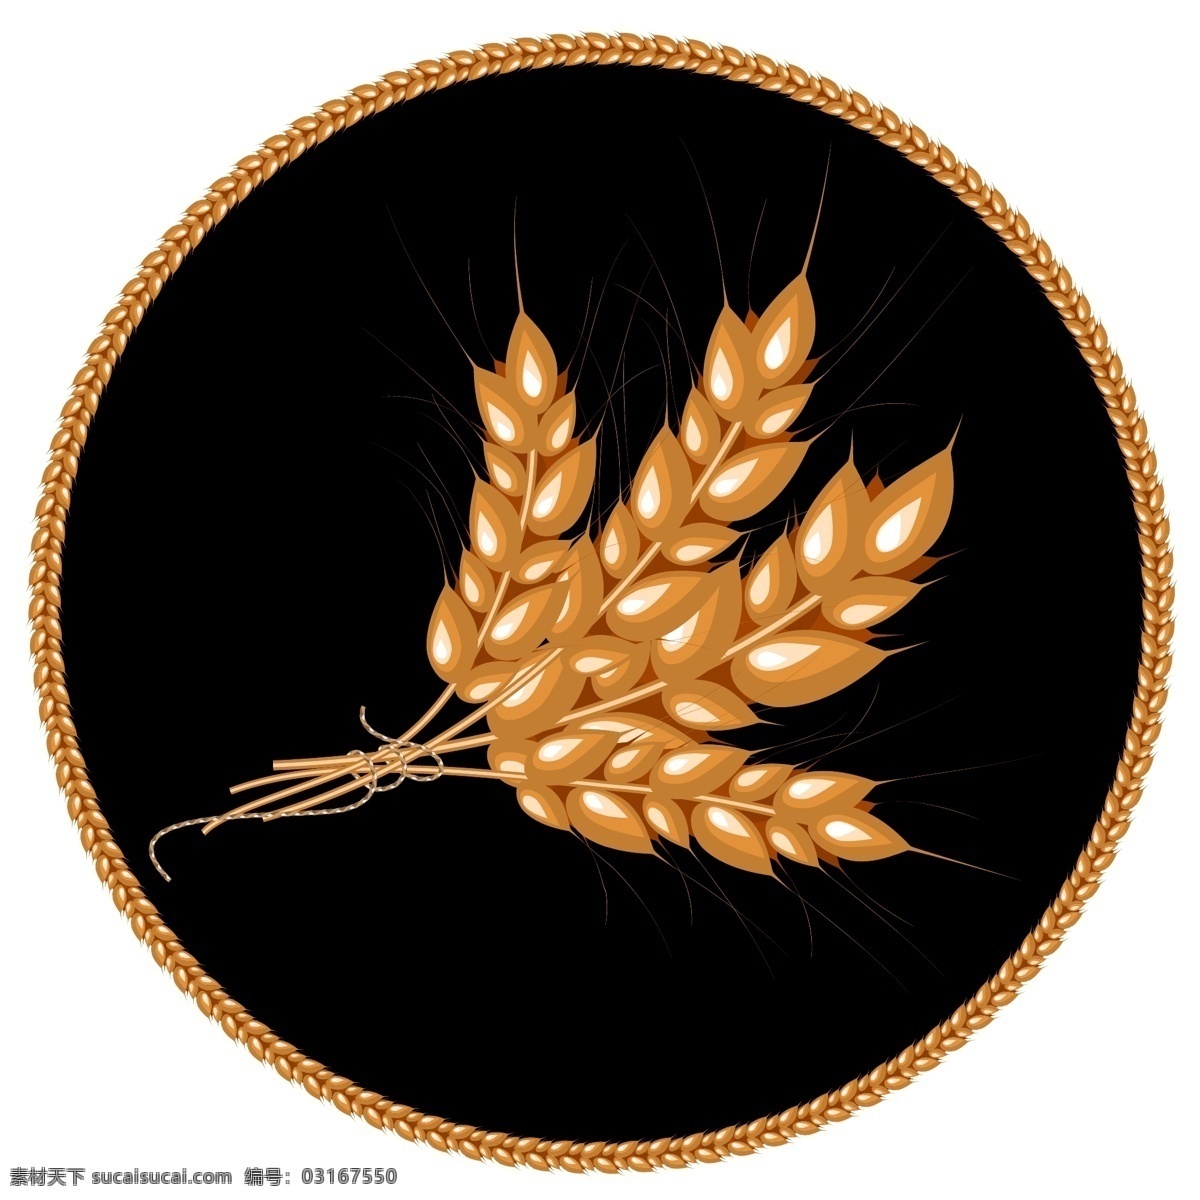 小麦 图标 设计素材 金色麦子 麦子图标 图标设计 矢量图标 彩色图标 标签 标签设计 底纹边框 矢量素材 黑色